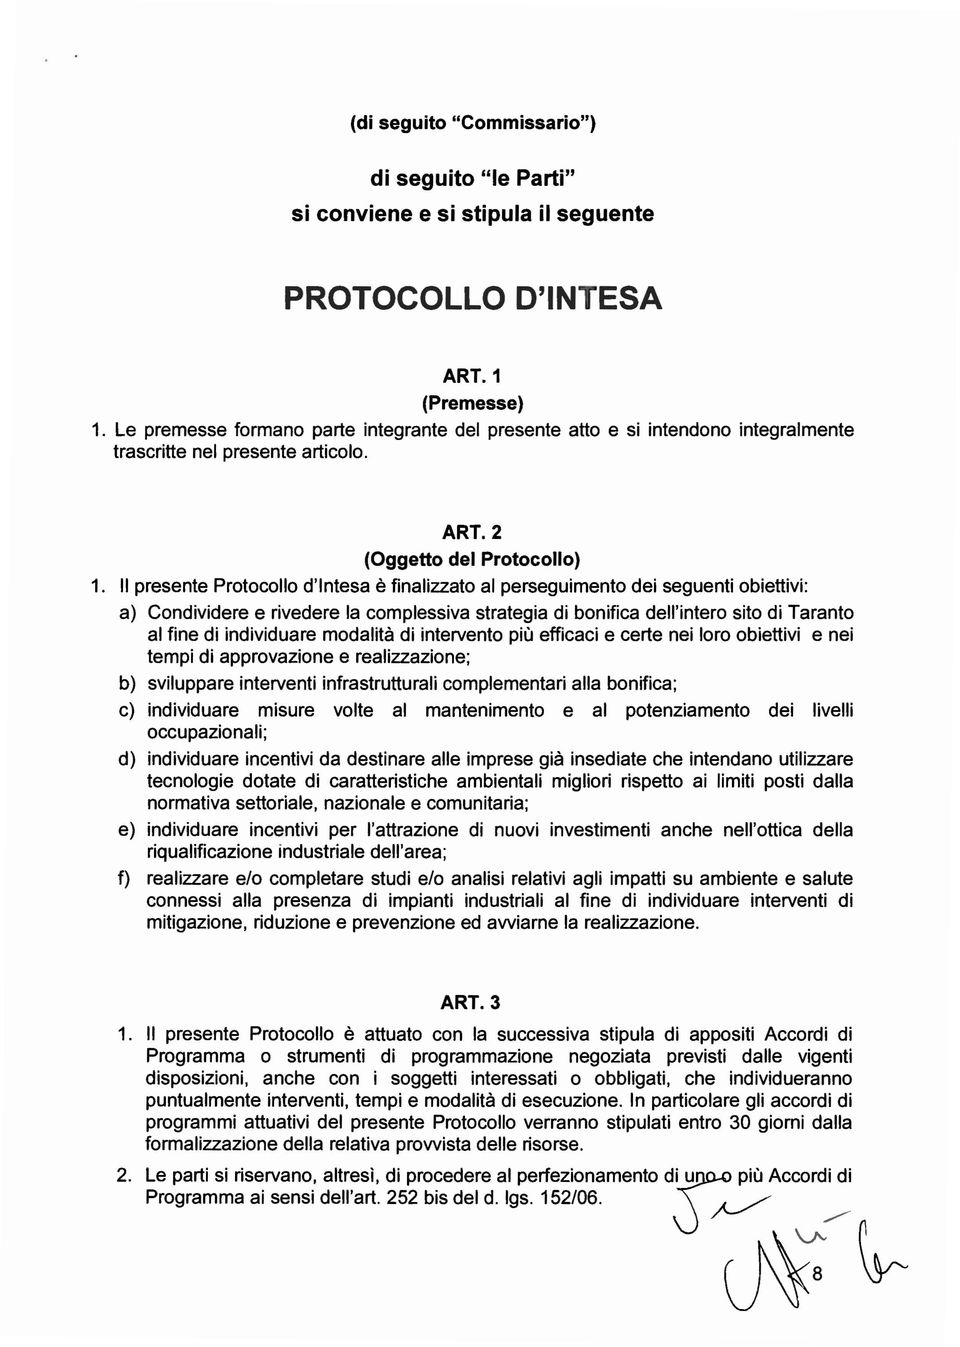 Il presente Protocollo d'intesa è finalizzato al perseguimento dei seguenti obiettivi: a) Condividere e rivedere la complessiva strategia di bonifica dell'intero sito di Taranto al fine di